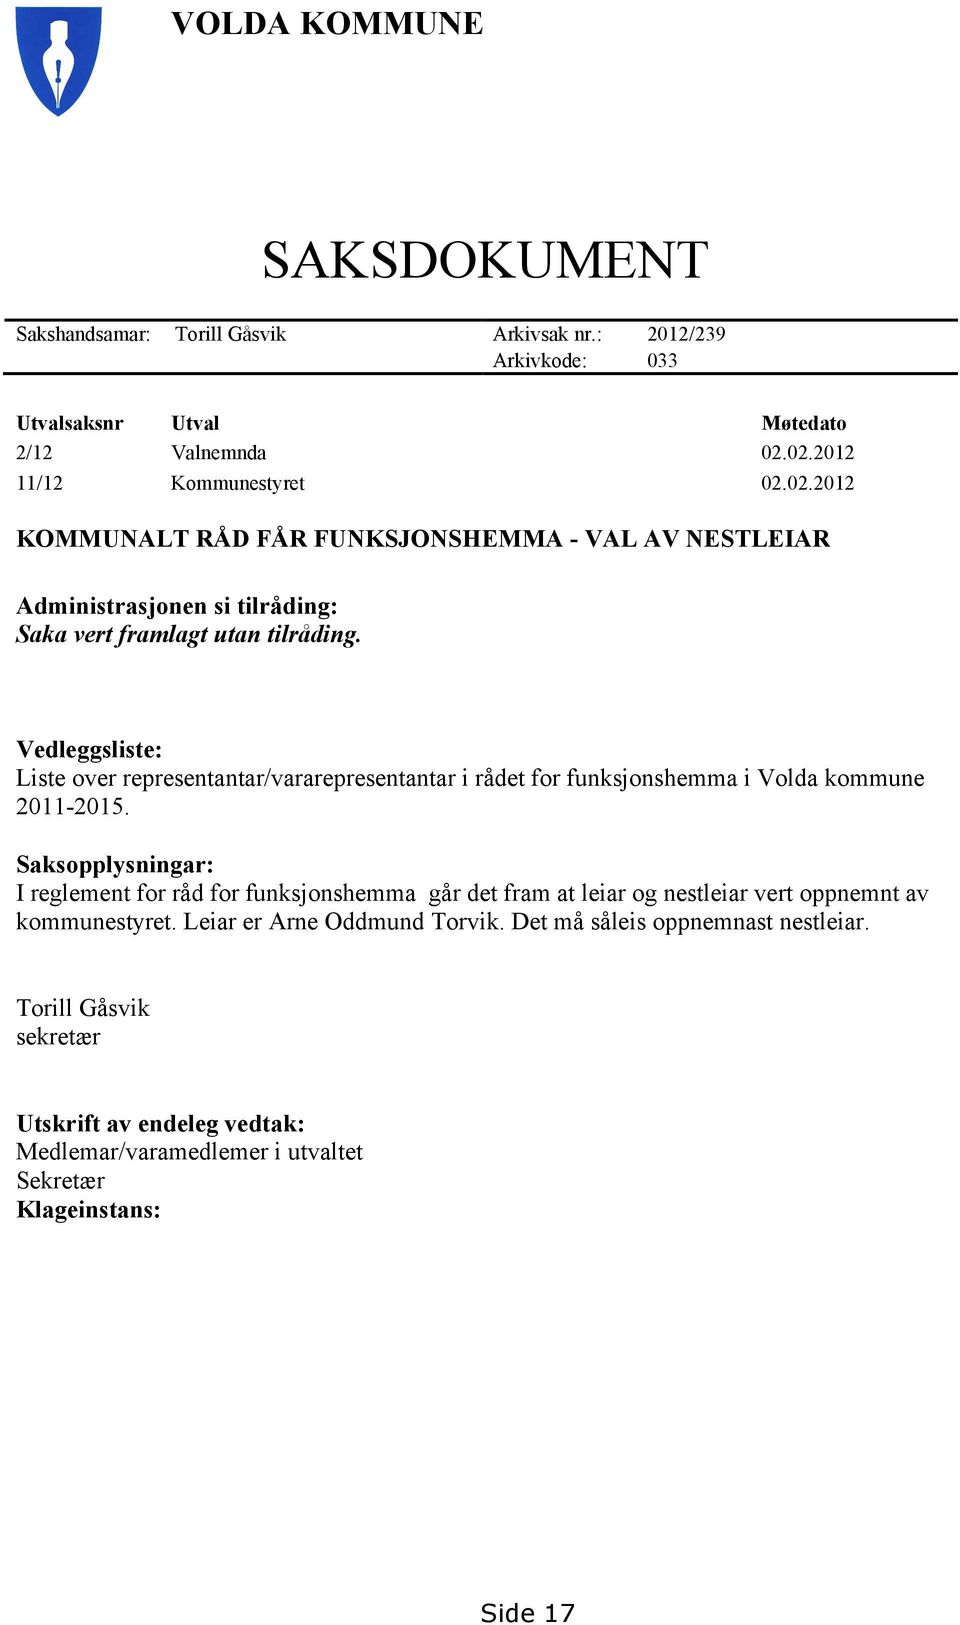 Vedleggsliste: Liste over representantar/vararepresentantar i rådet for funksjonshemma i Volda kommune 2011-2015.